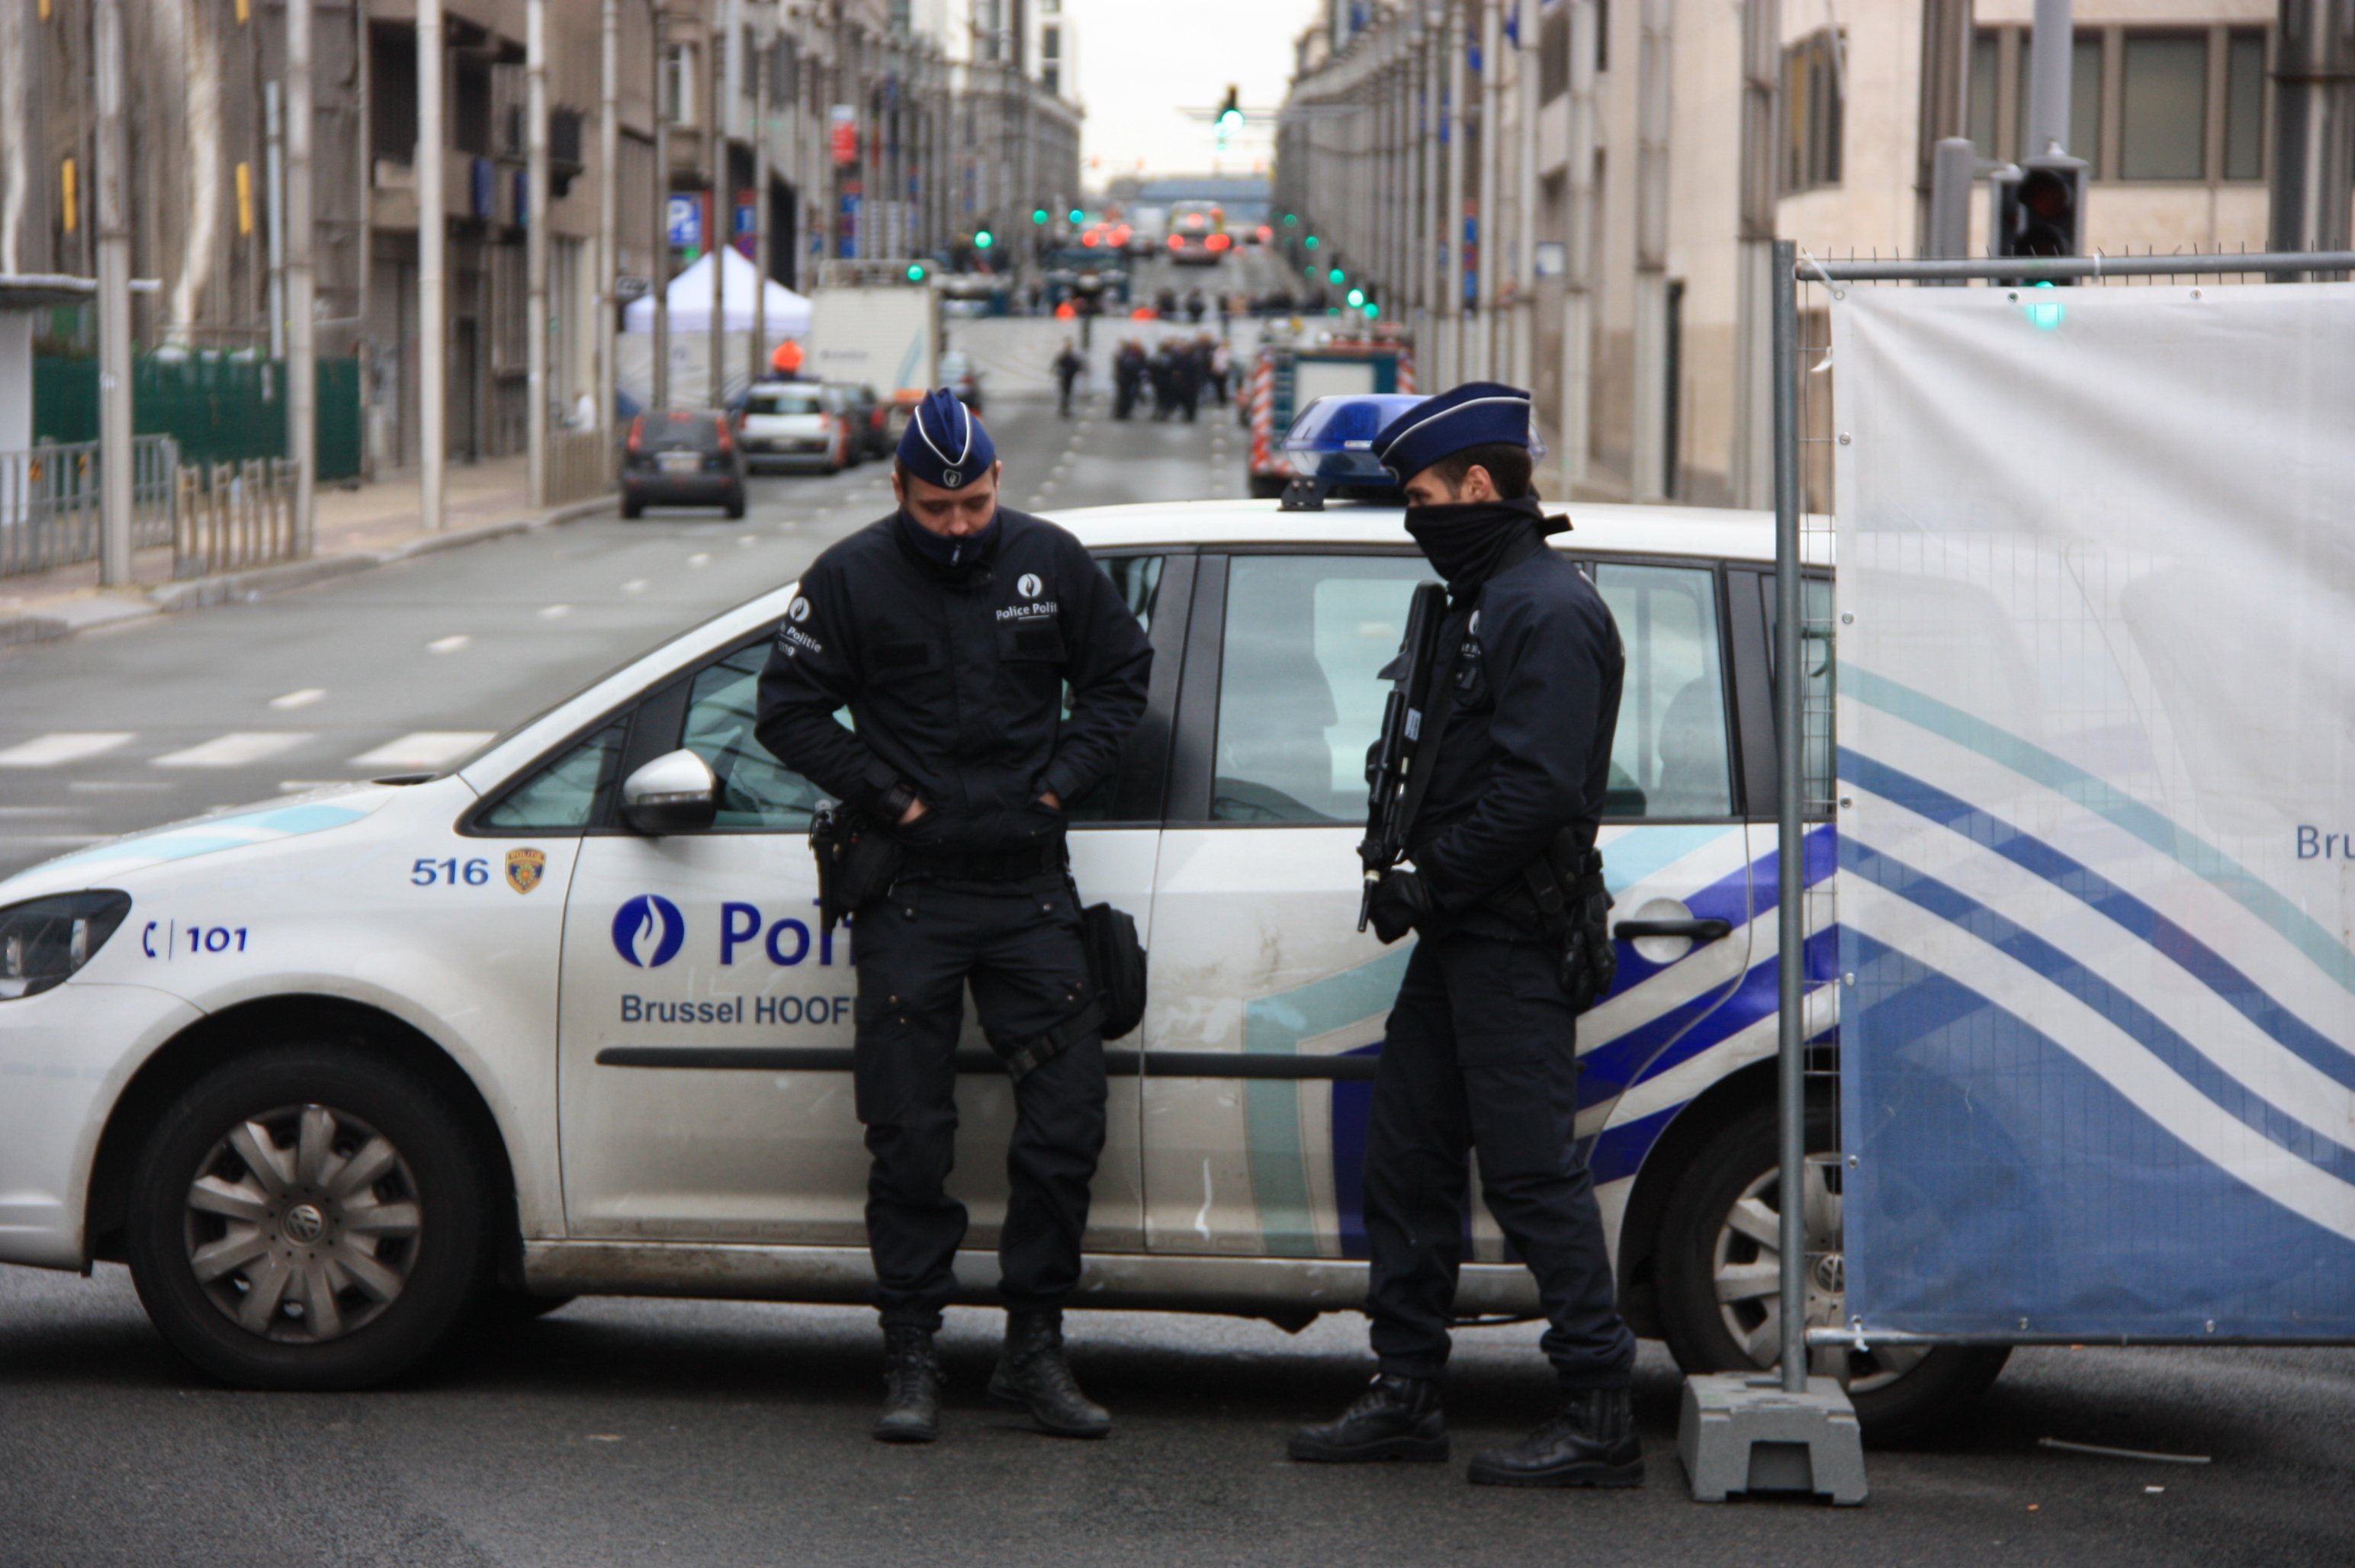 ¿Crees que la policía belga hizo bien poniendo una estelada en su coche?